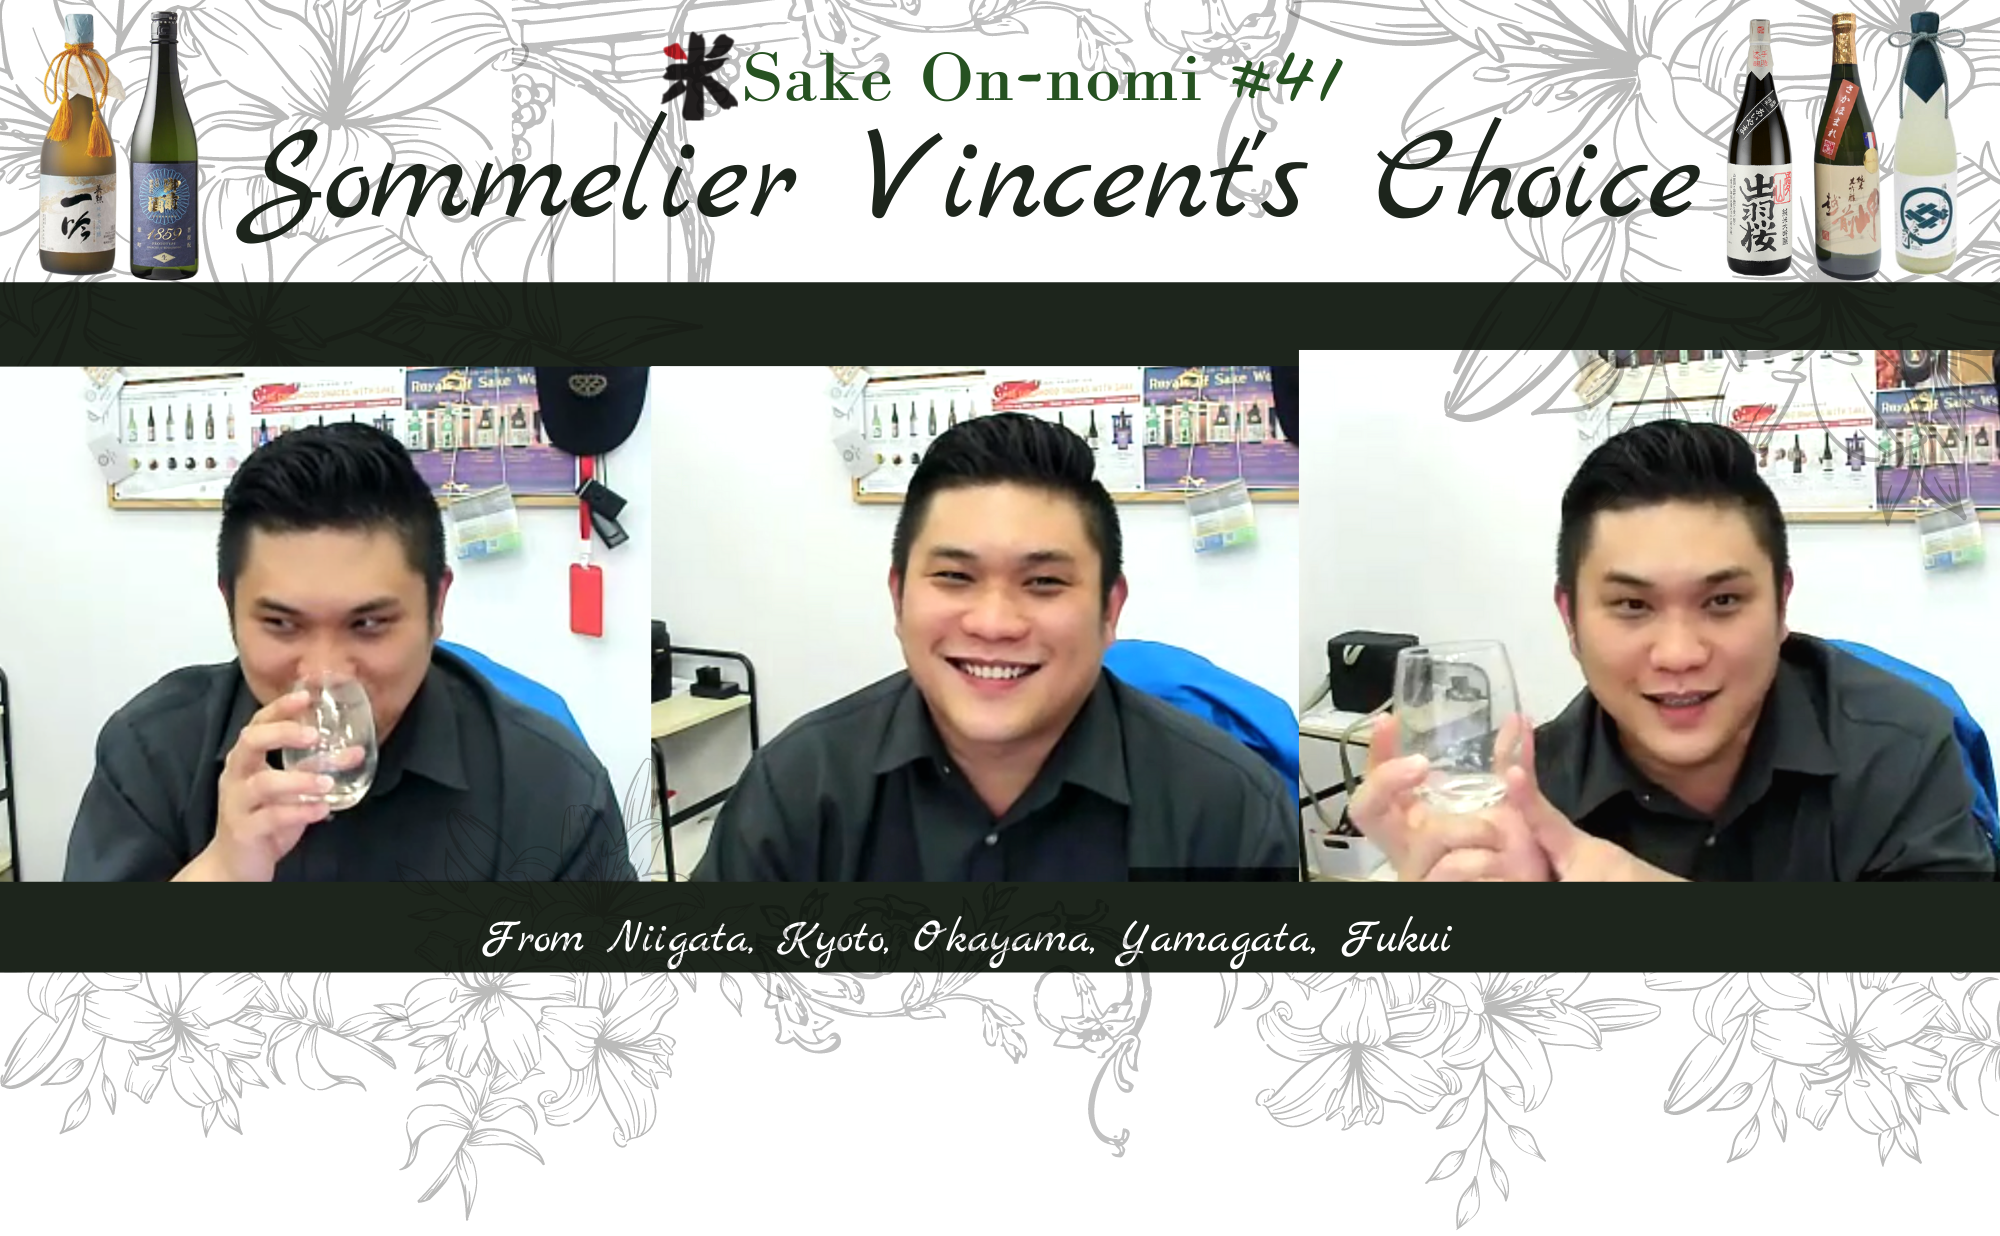 Somm's Choice ft. Vincent Zheng - Sake On-nomi #41